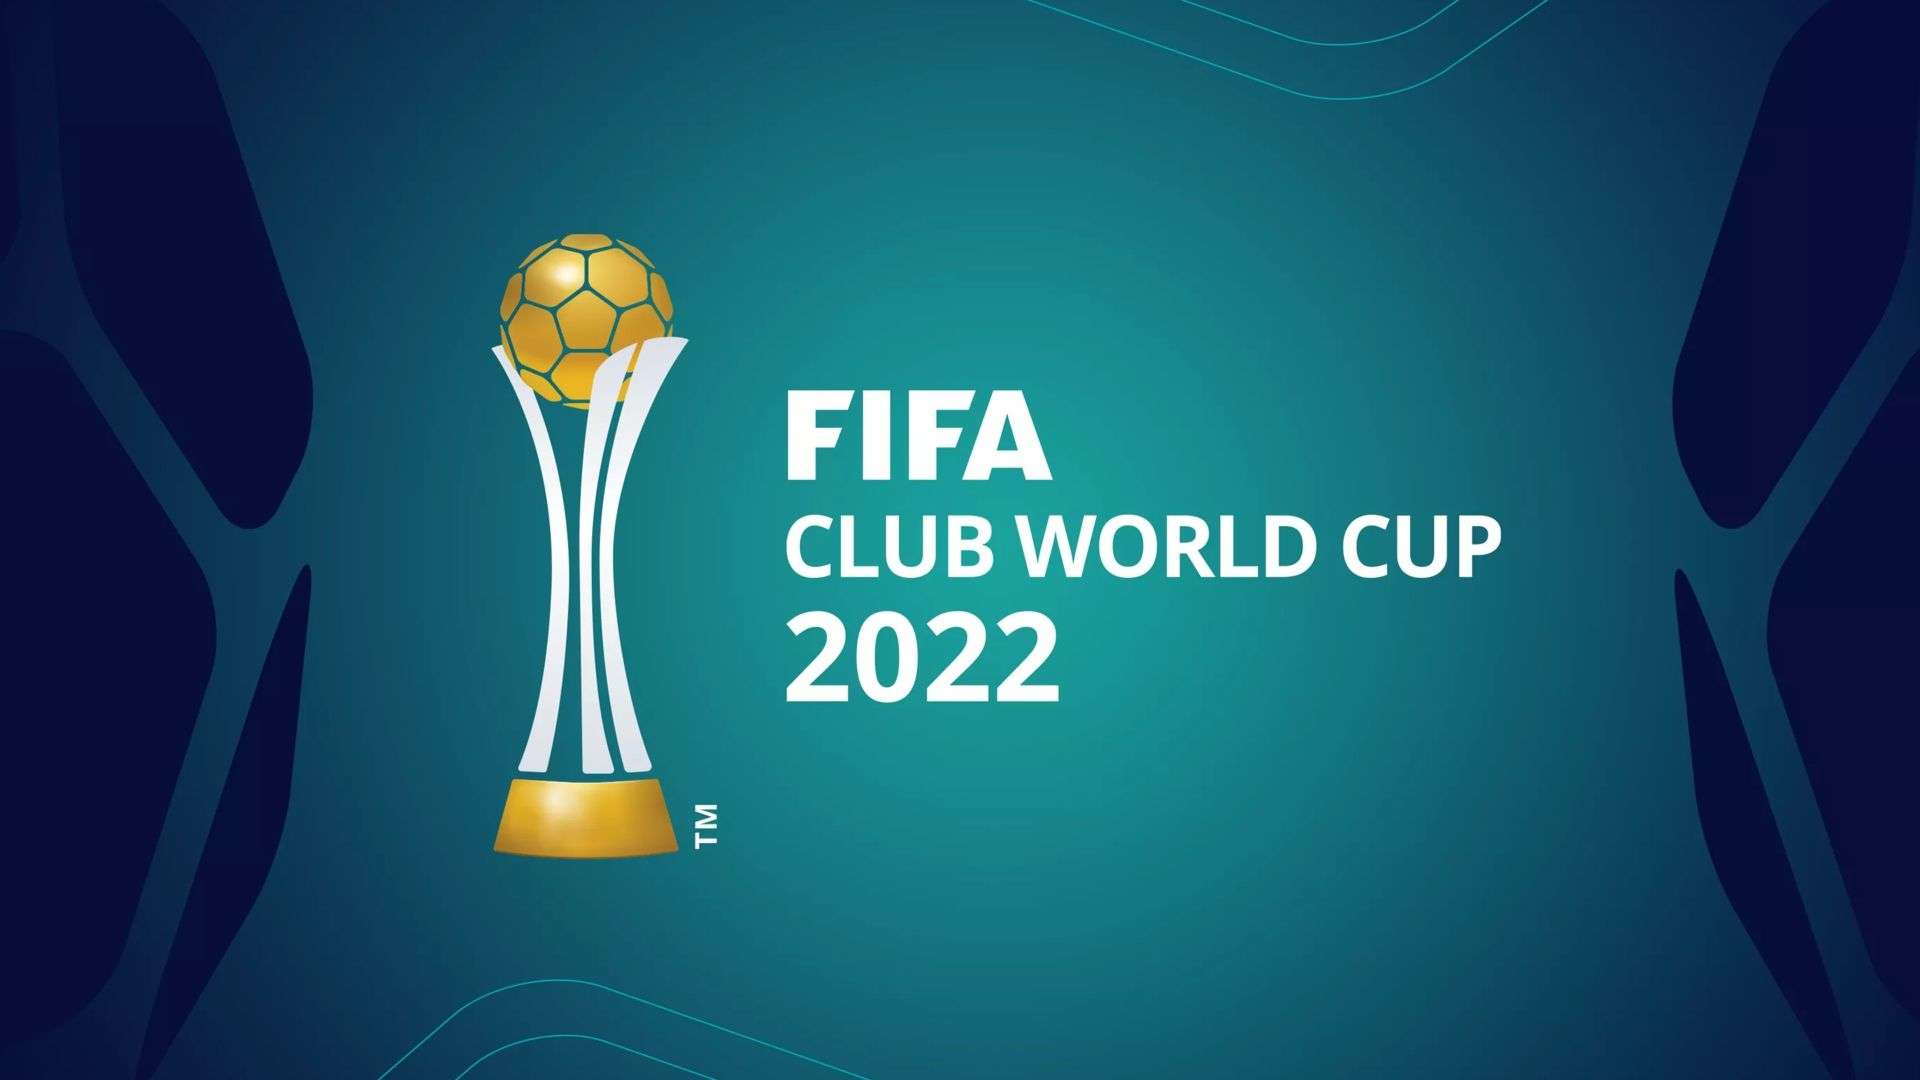 2022 FIFA Club World Cup logo